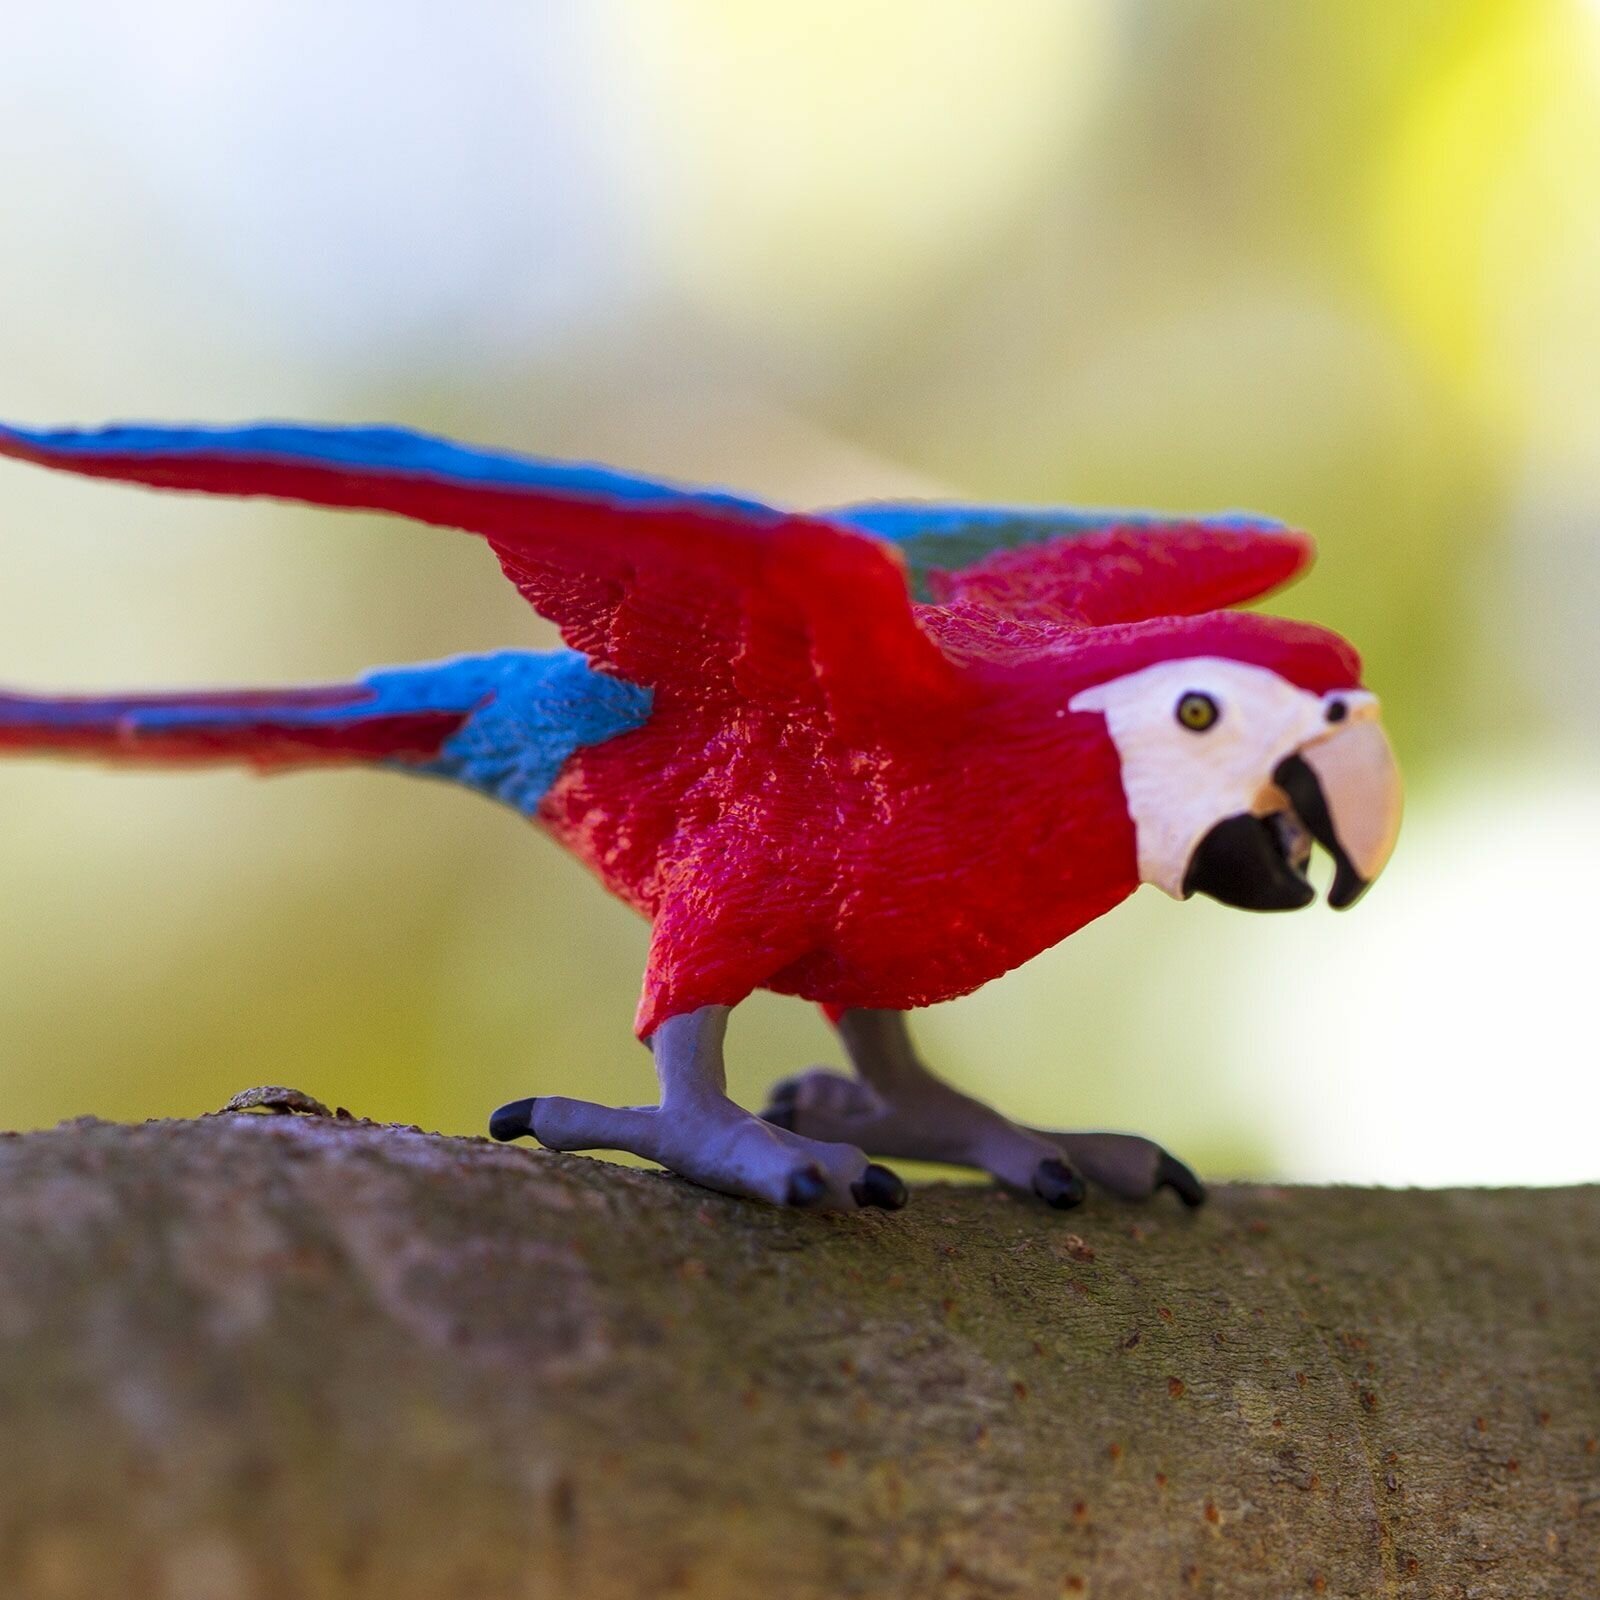 Фигурка птицы Safari Ltd Попугай Зеленокрылый ара, для детей, игрушка коллекционная, 263929